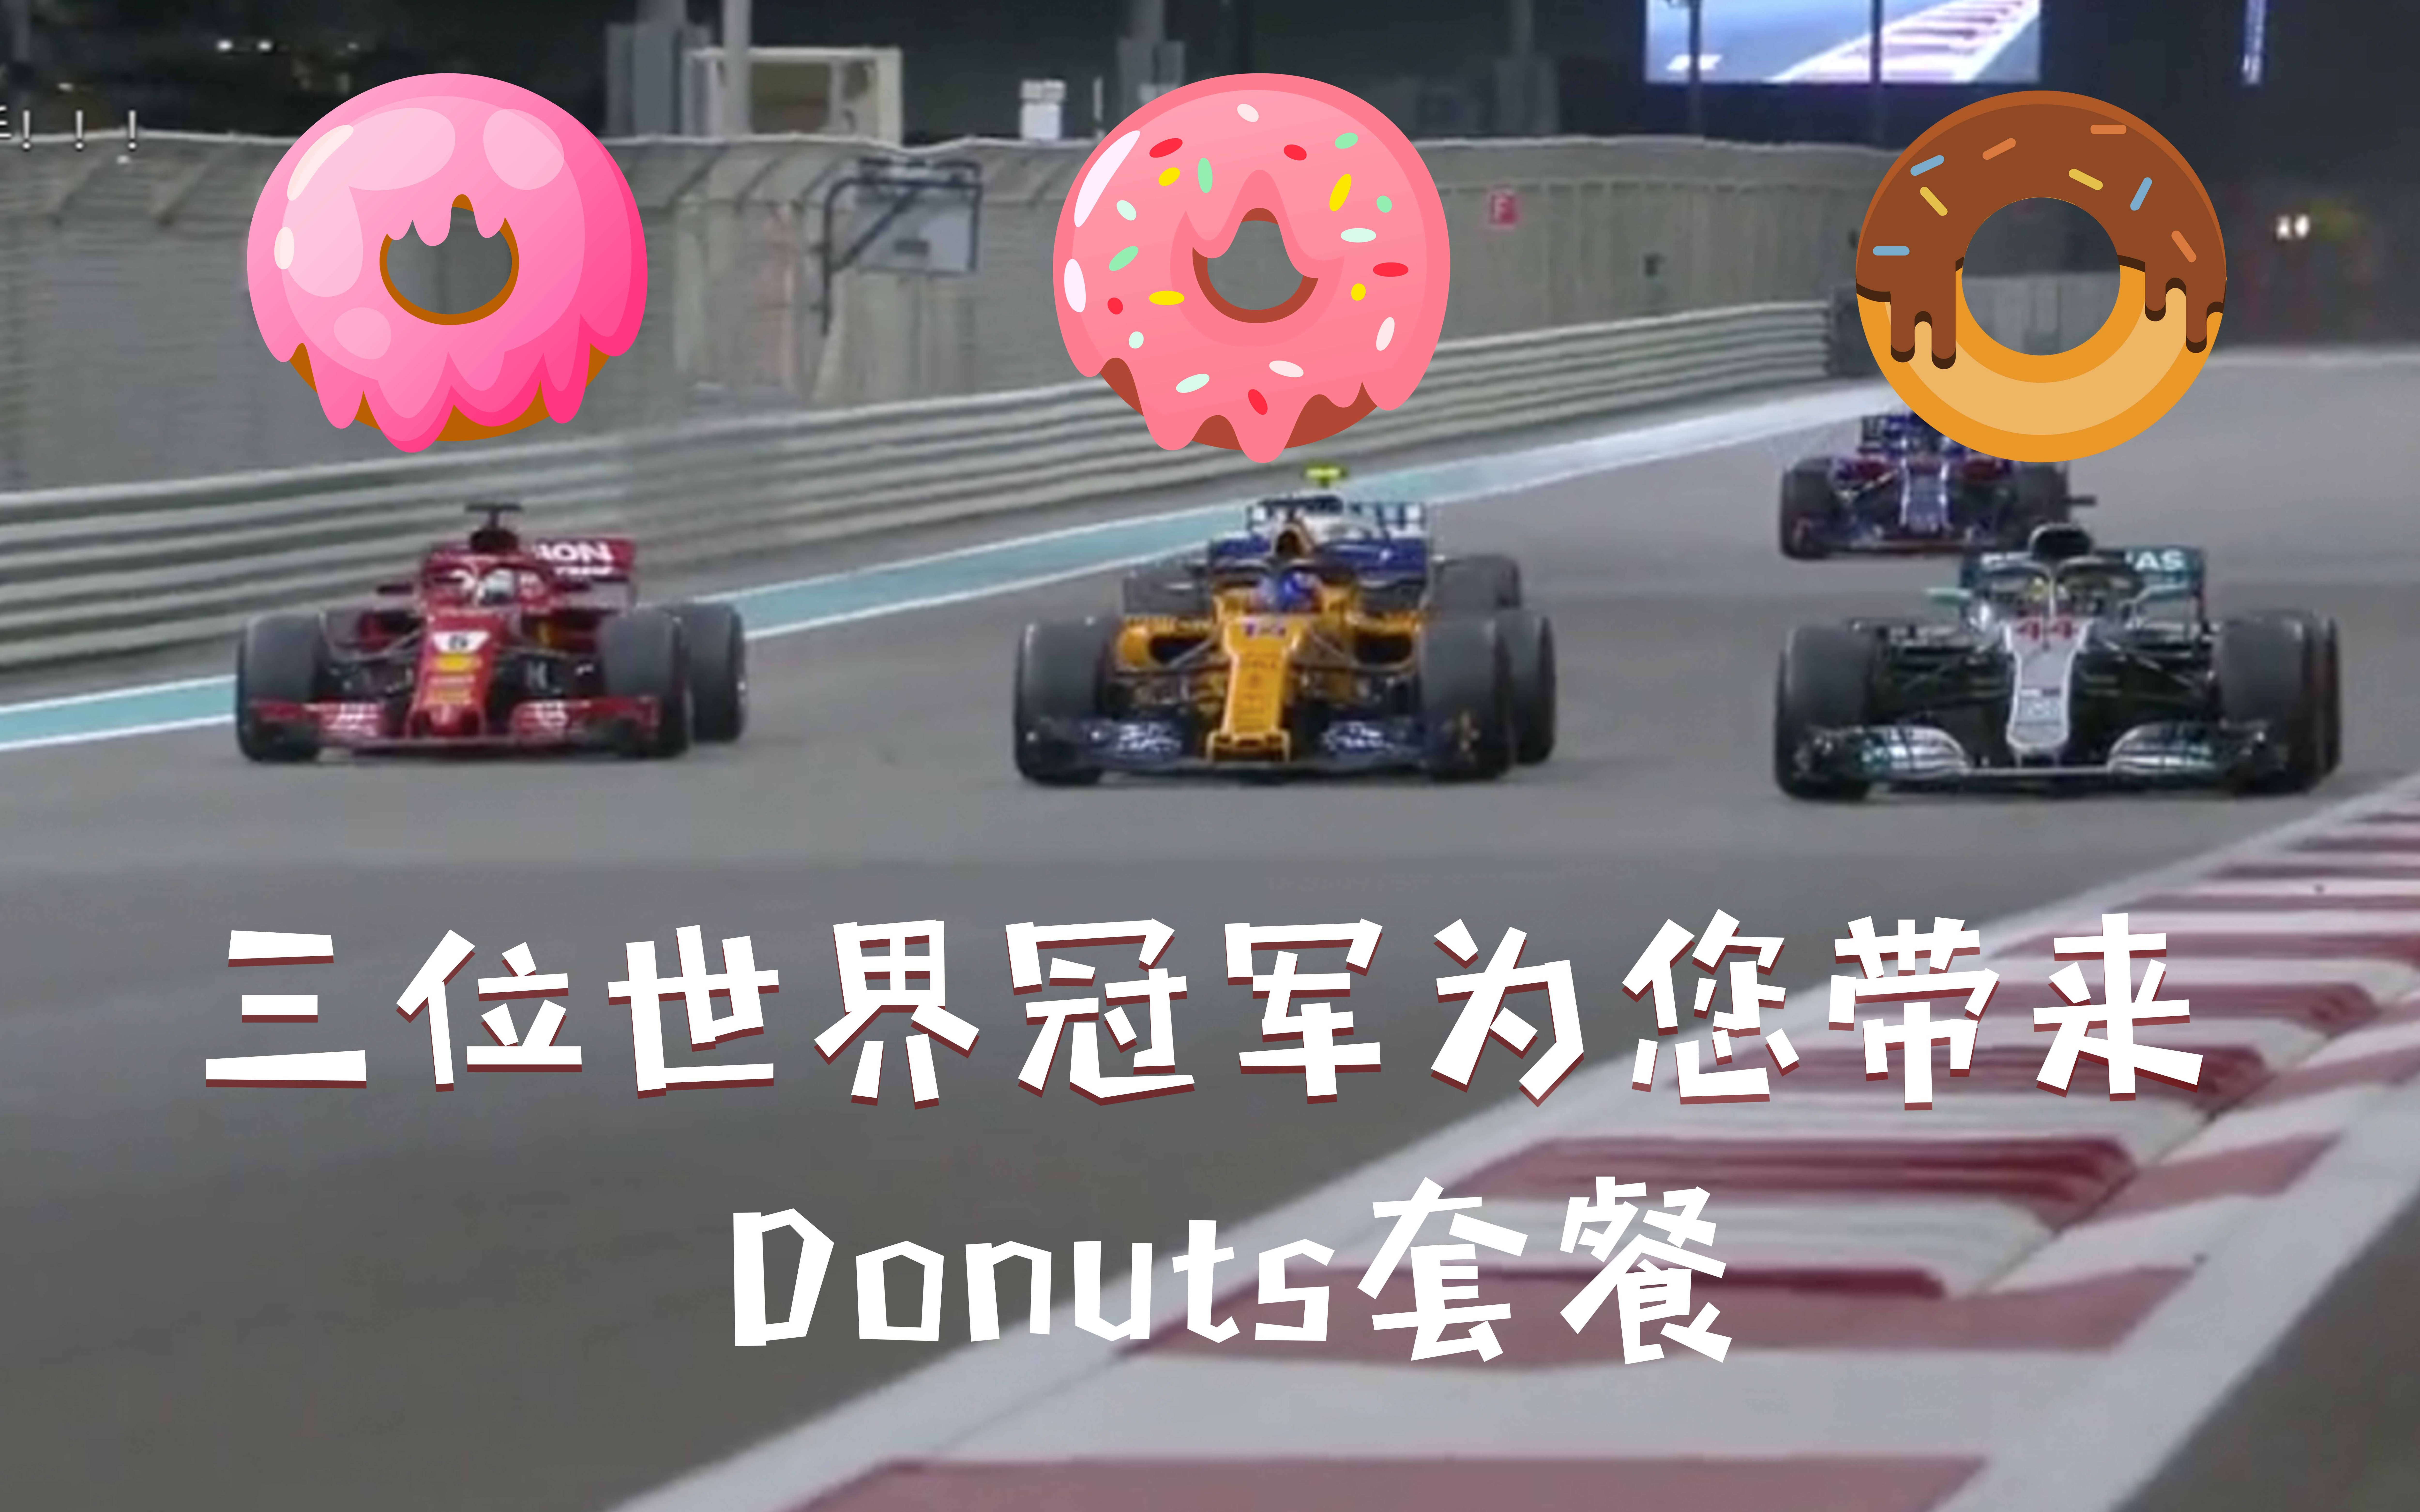 【泪目】三位世界冠军的Donuts表演